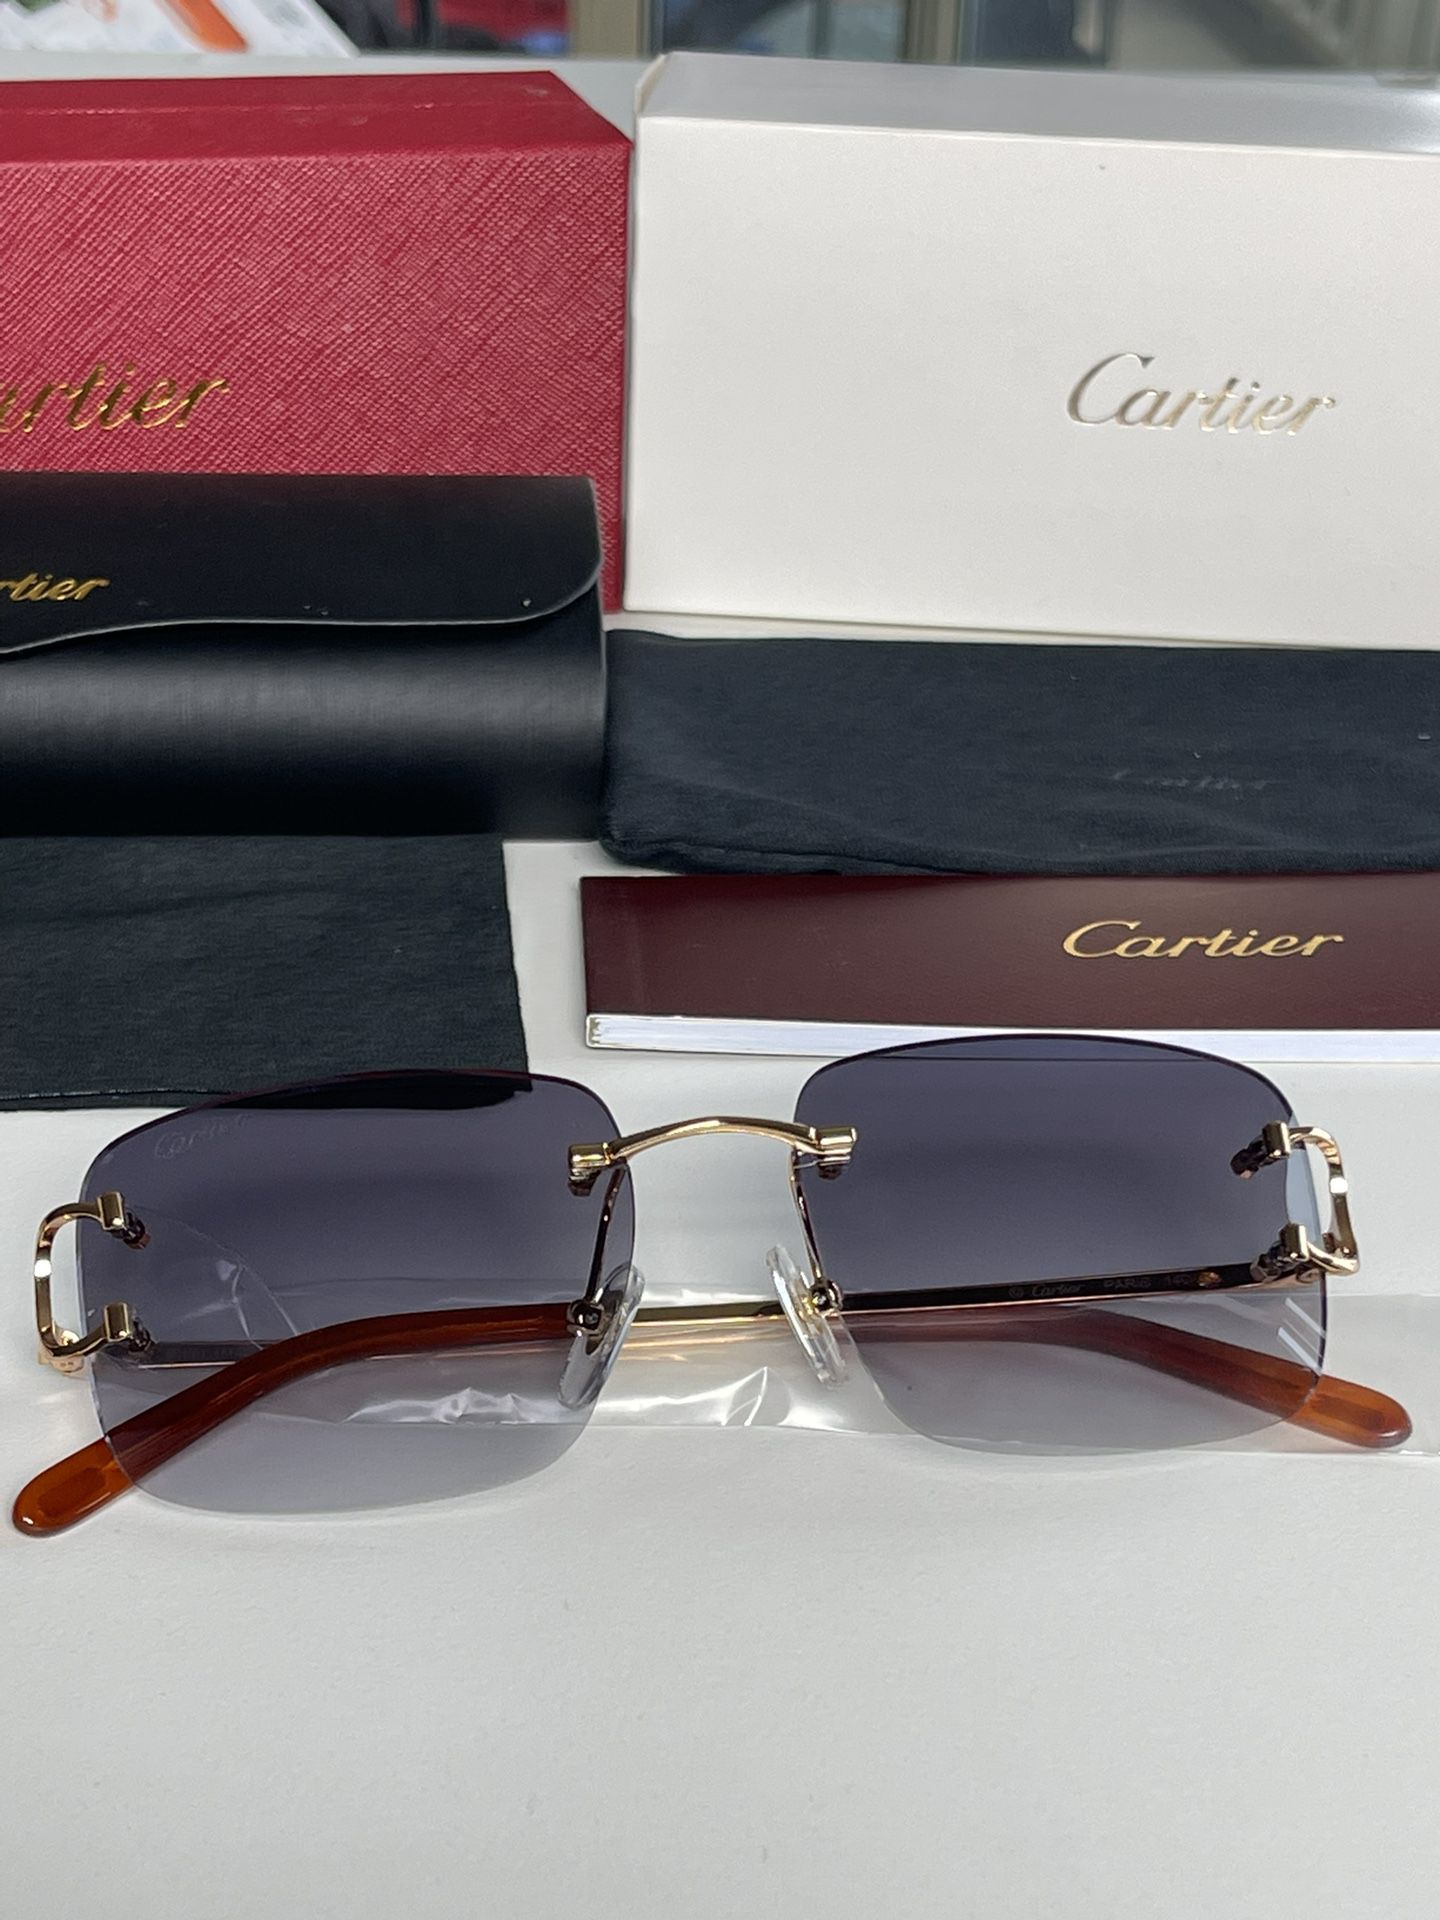 Cartier Glasses, Black Lense, Gold Frame